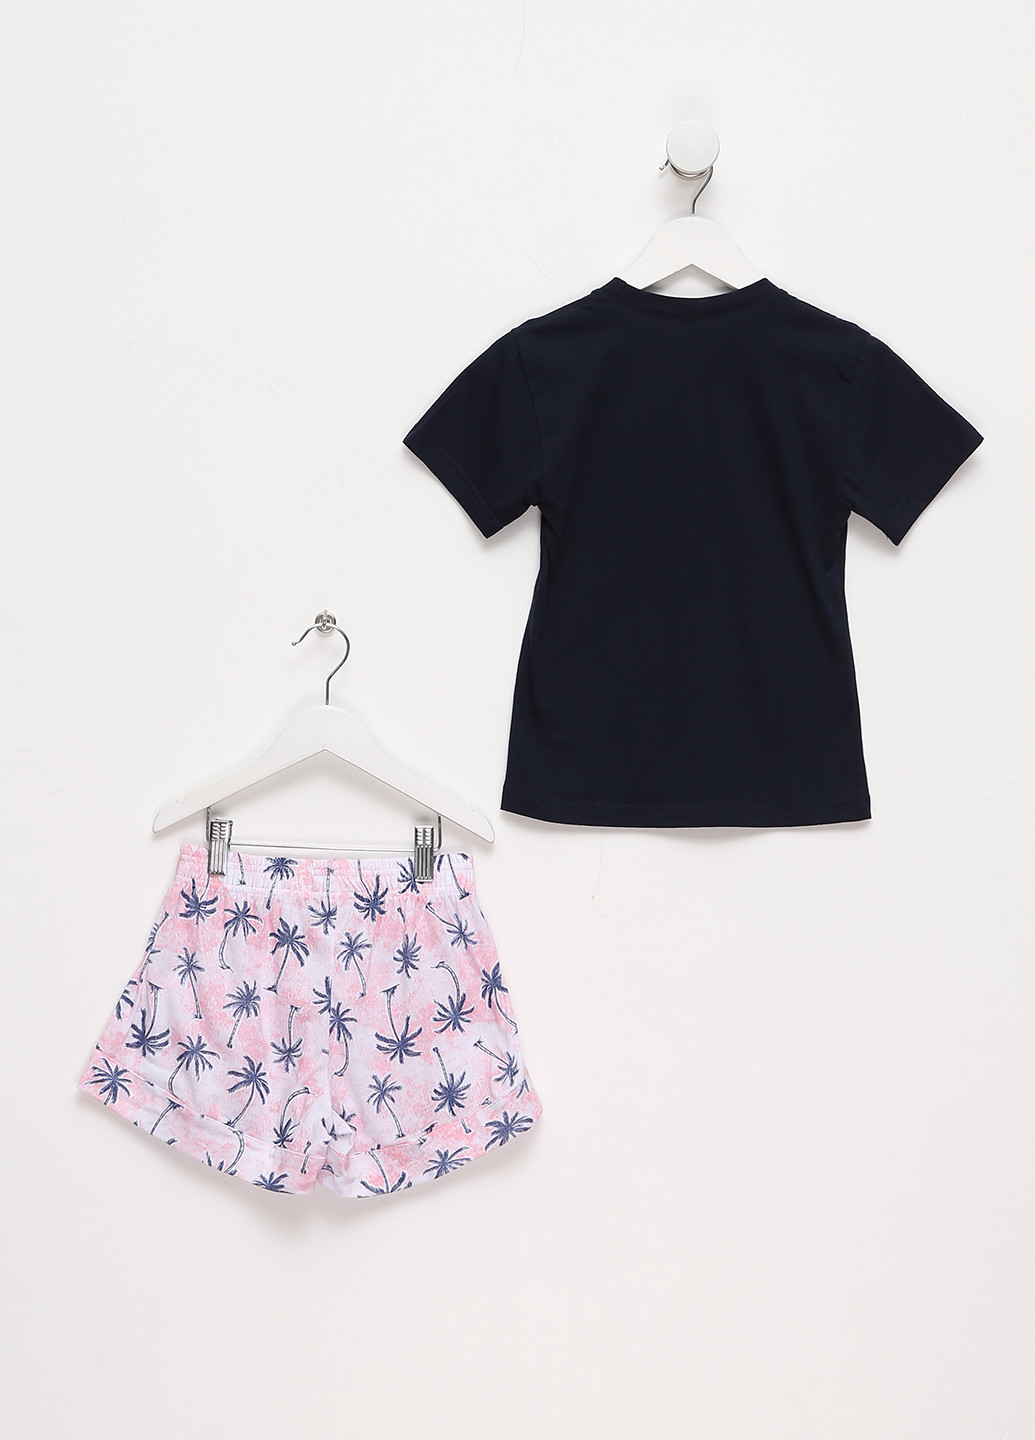 Комбинированная всесезон пижама (футболка, шорты) футболка + шорты Aniele